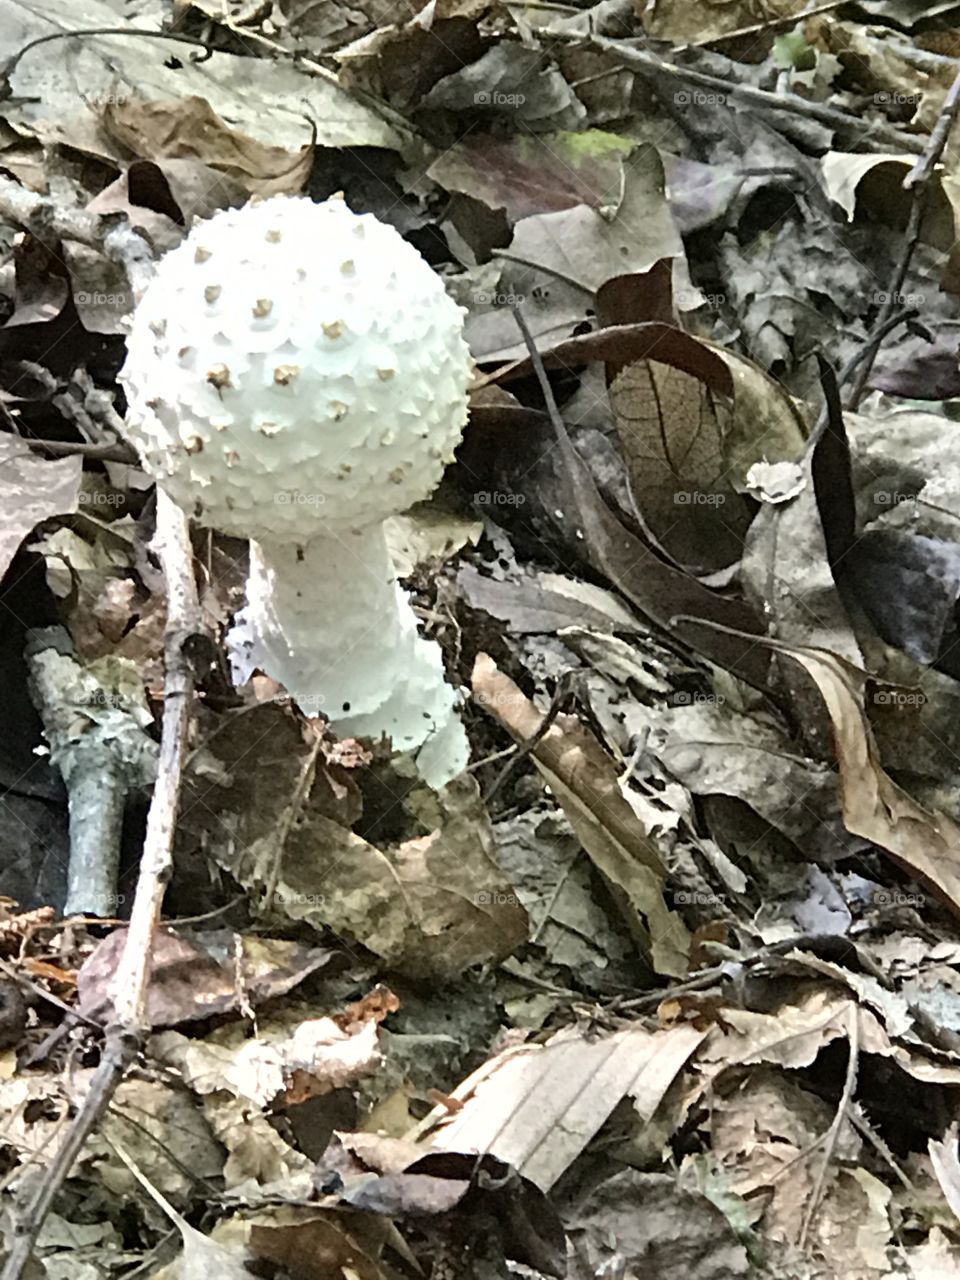 Odd mushrooms/ golf ball